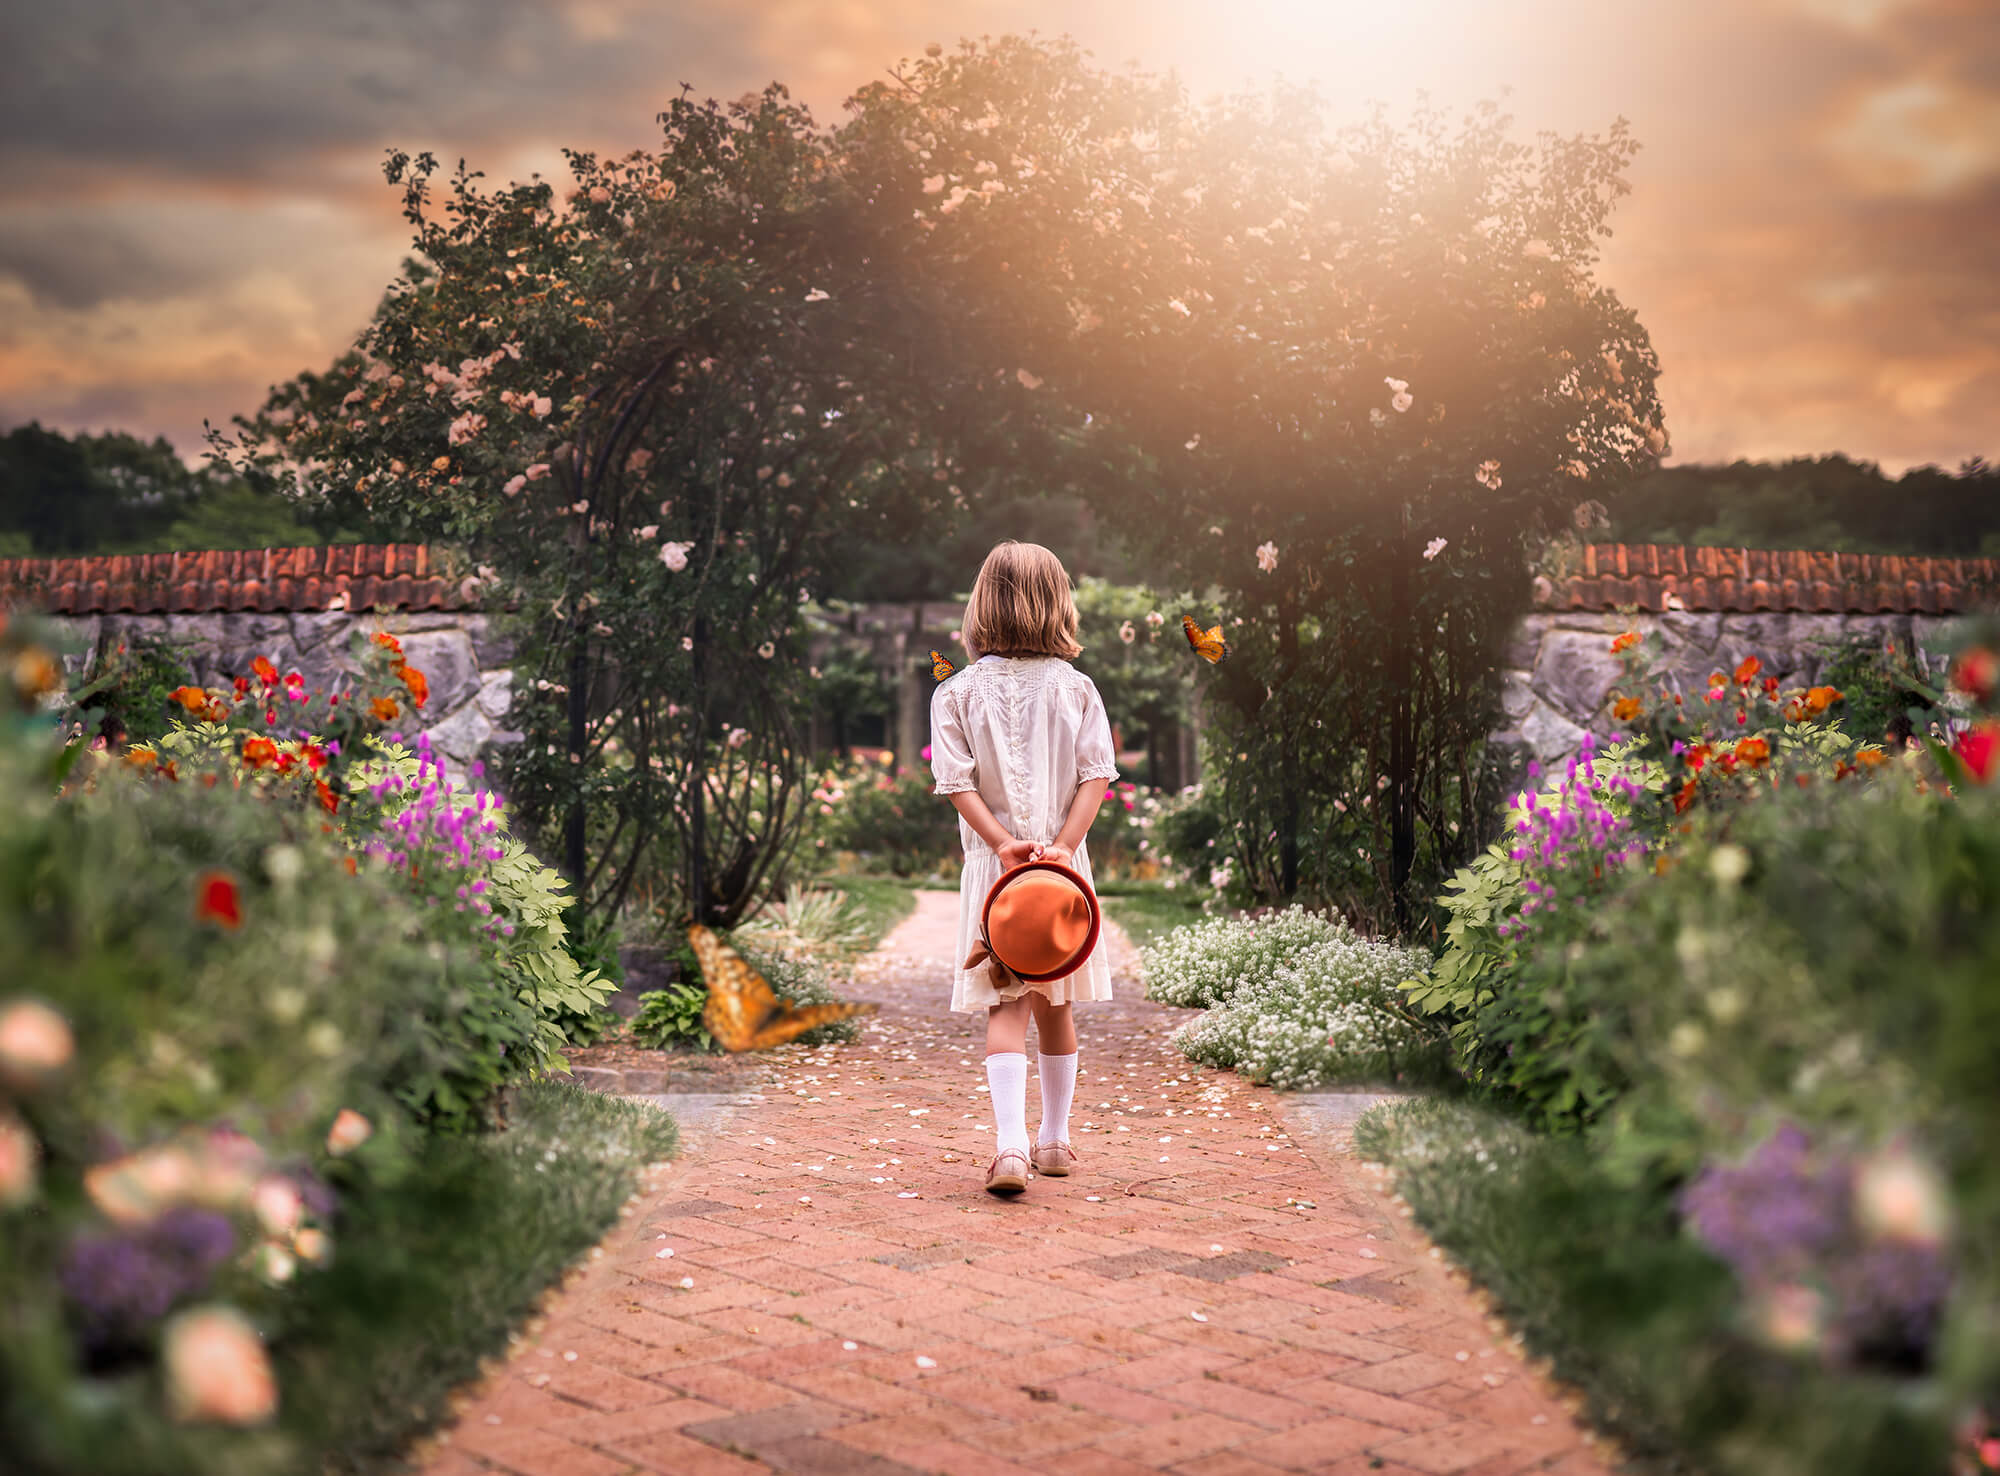 A little girl exploring a garden with butterflies